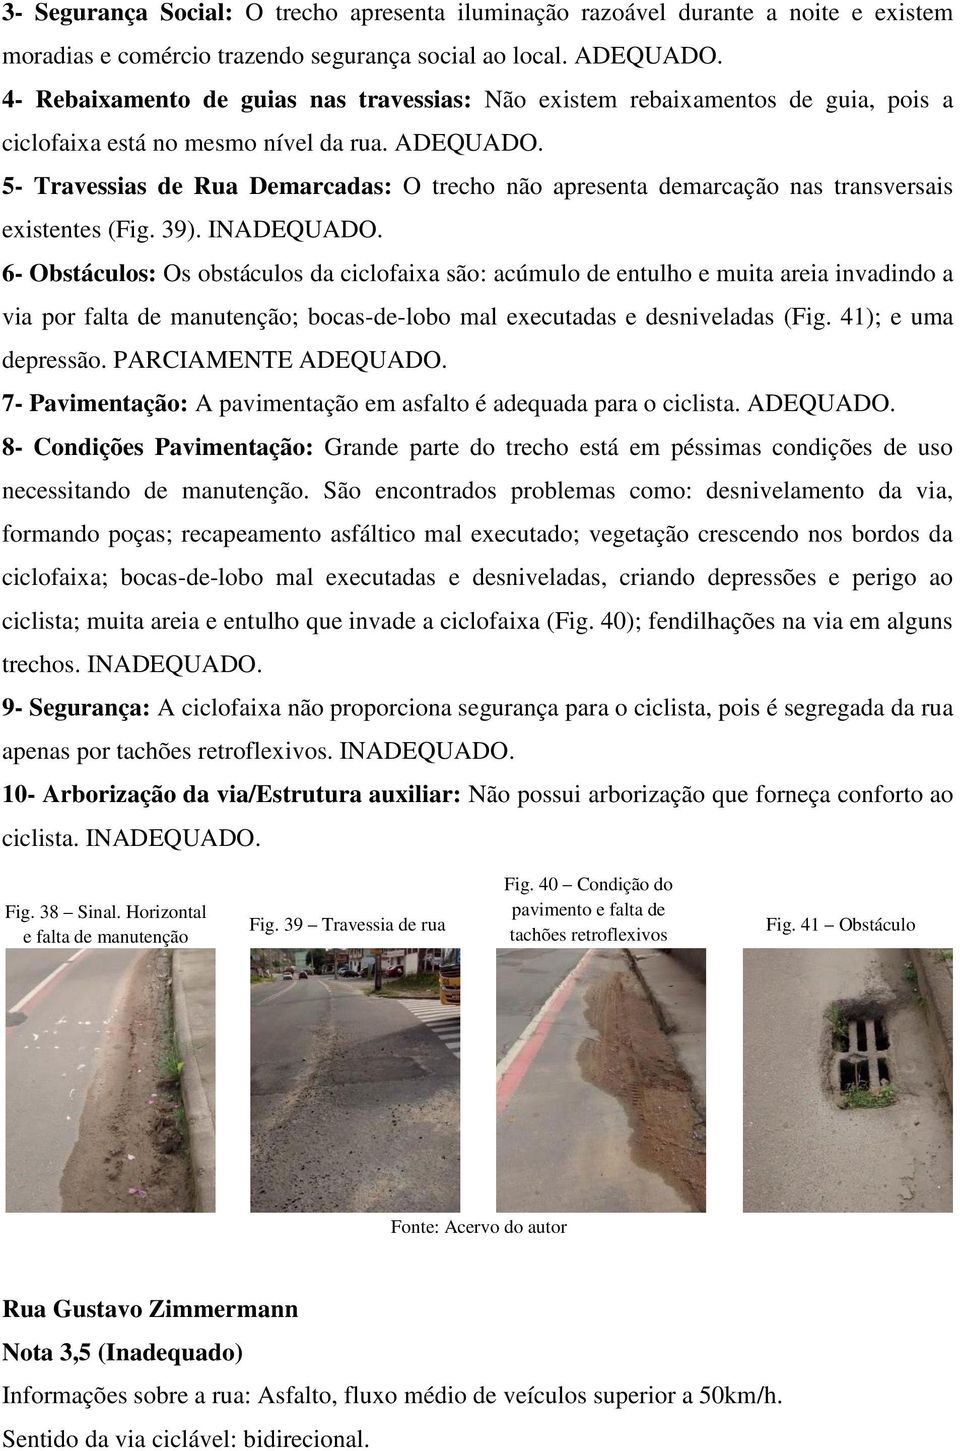 5- Travessias de Rua Demarcadas: O trecho não apresenta demarcação nas transversais existentes (Fig. 39). INADEQUADO.